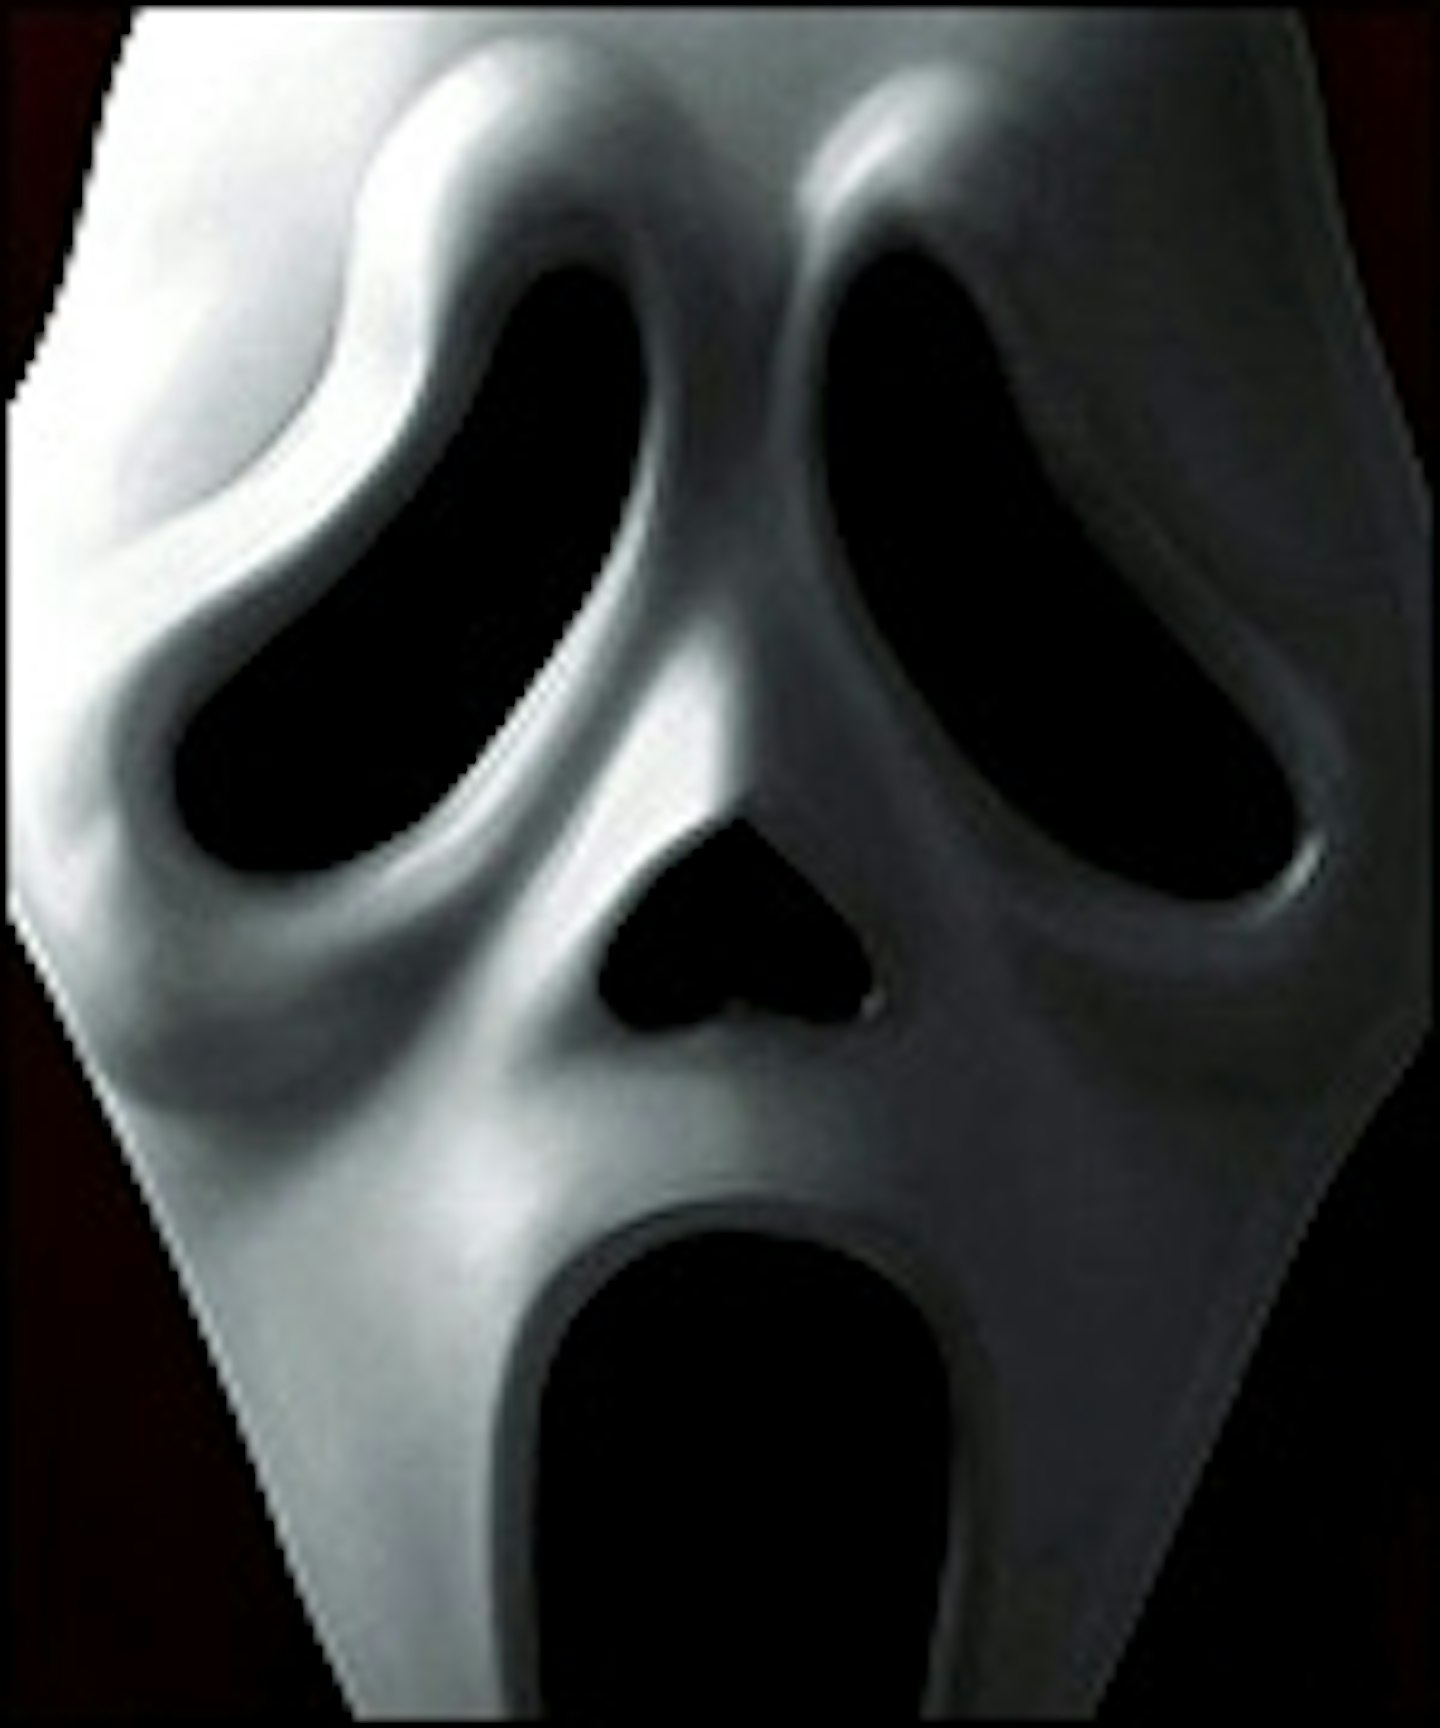 Scream 4 Teaser Poster Online